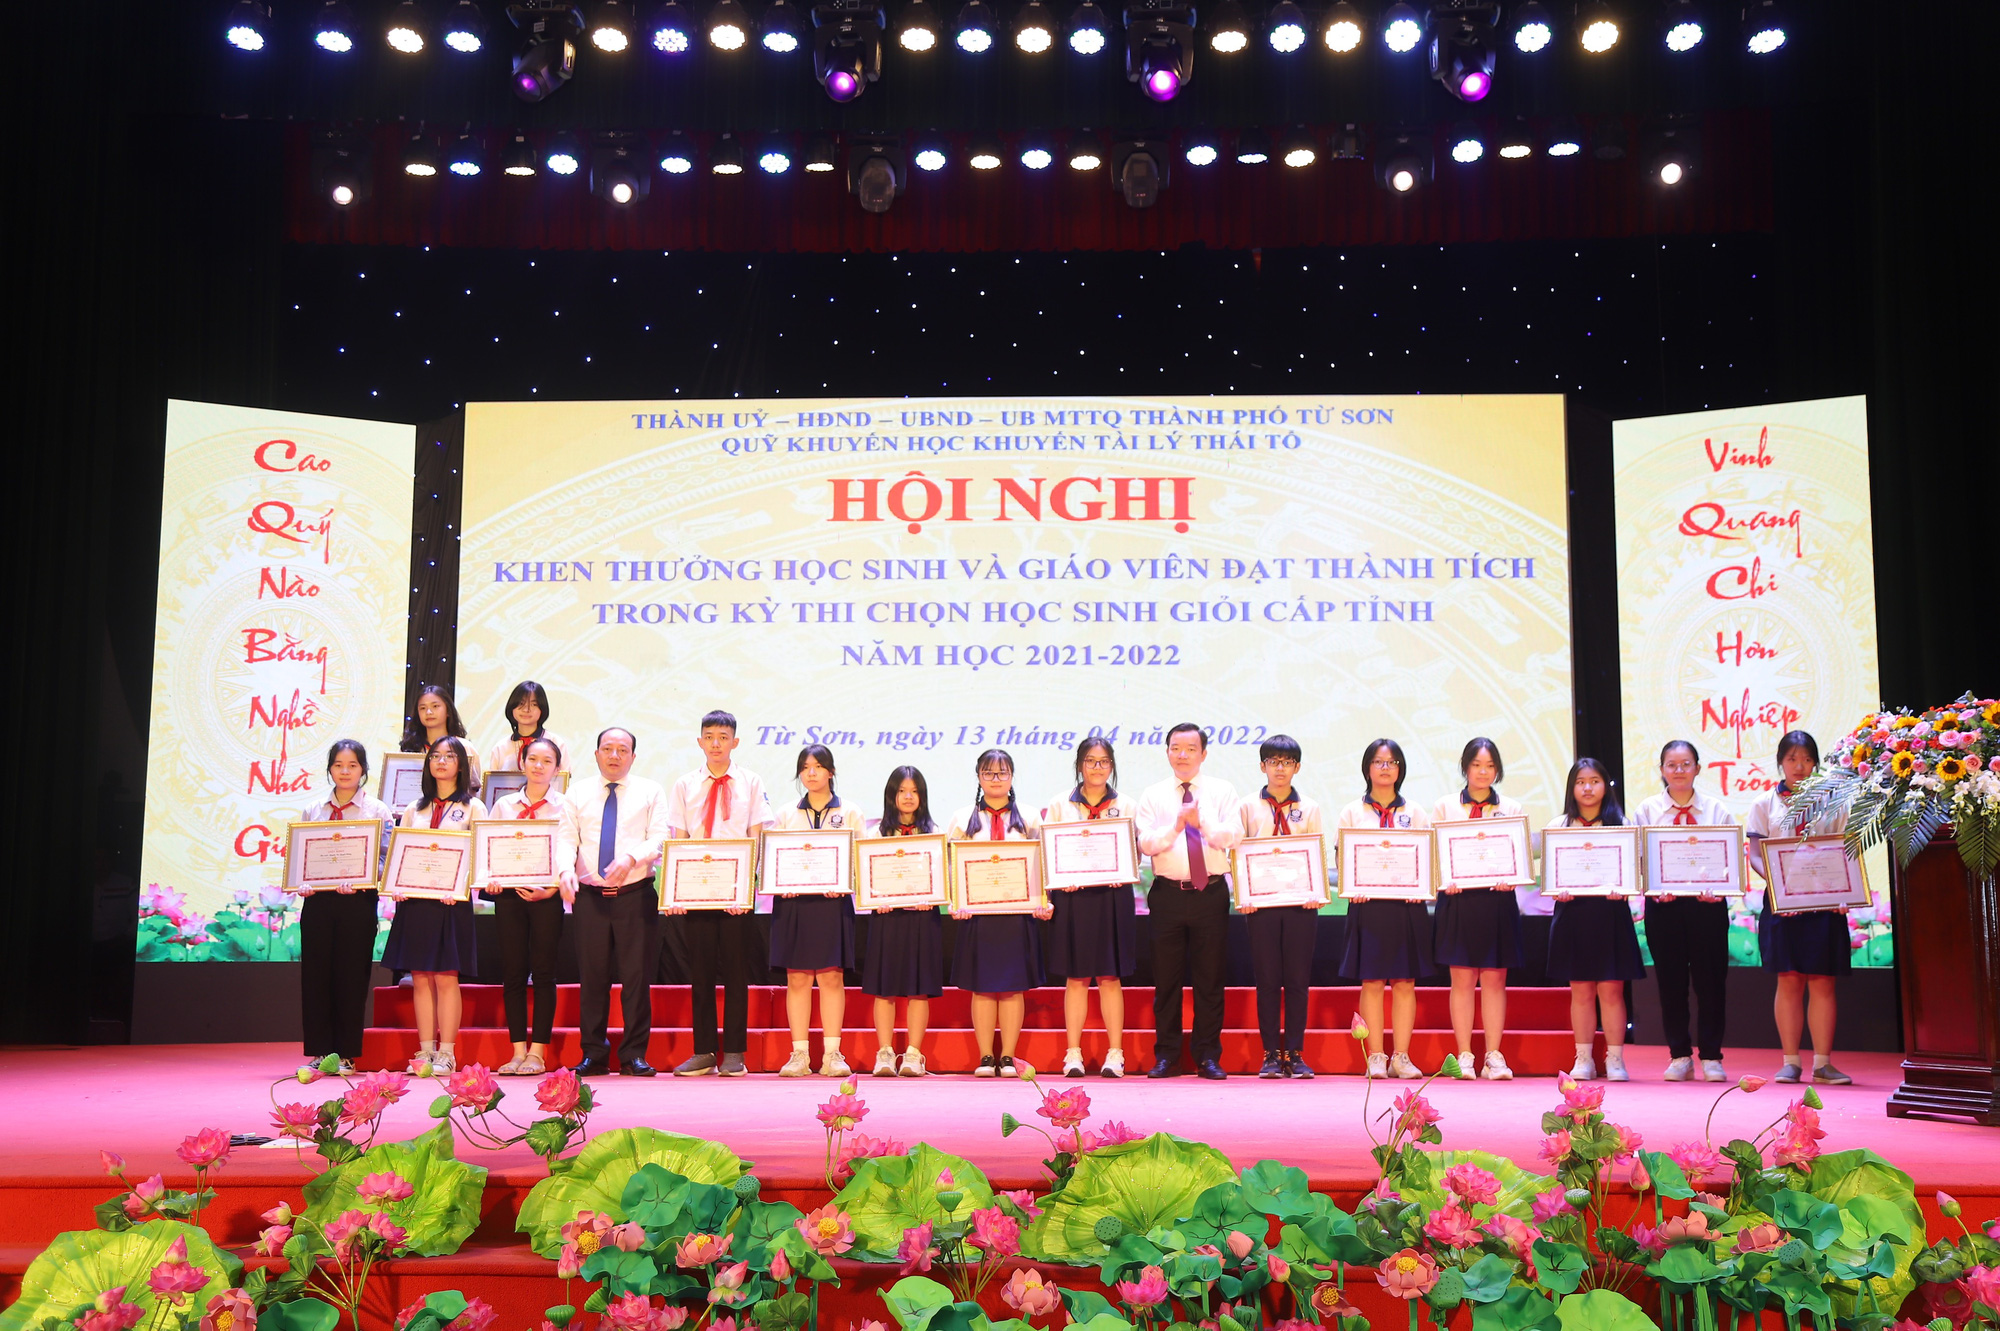 Thành phố Từ Sơn khen thưởng học sinh, giáo viên đạt thành tích trong kỳ thi học sinh giỏi cấp tỉnh năm học 2021-2022. - Ảnh 2.